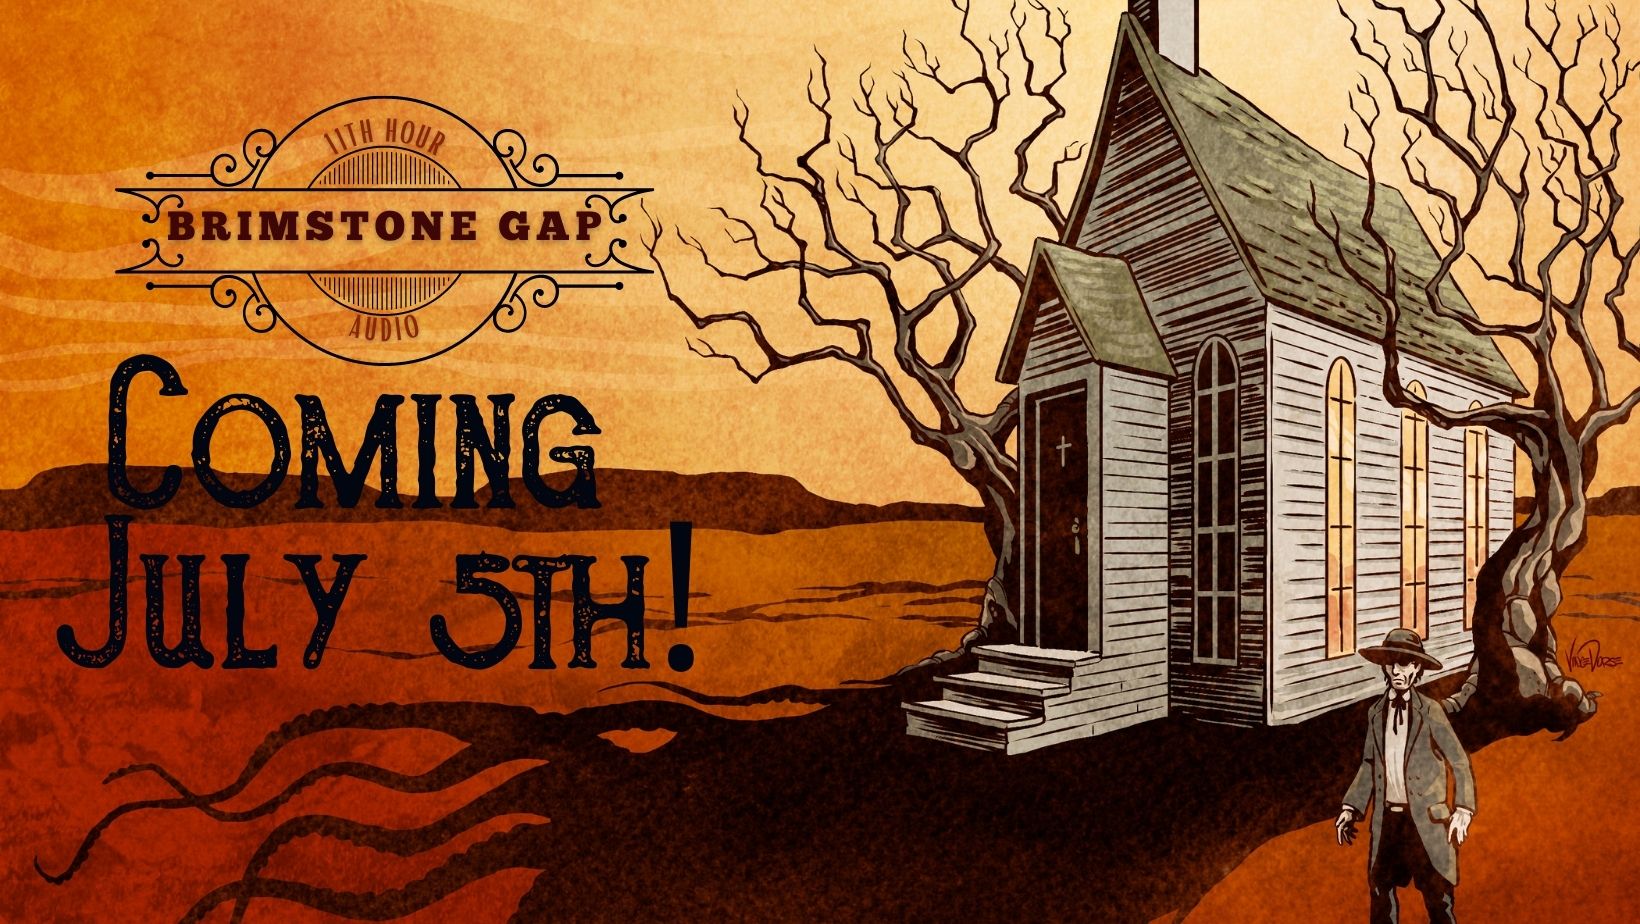 Brimstone Gap promotional image